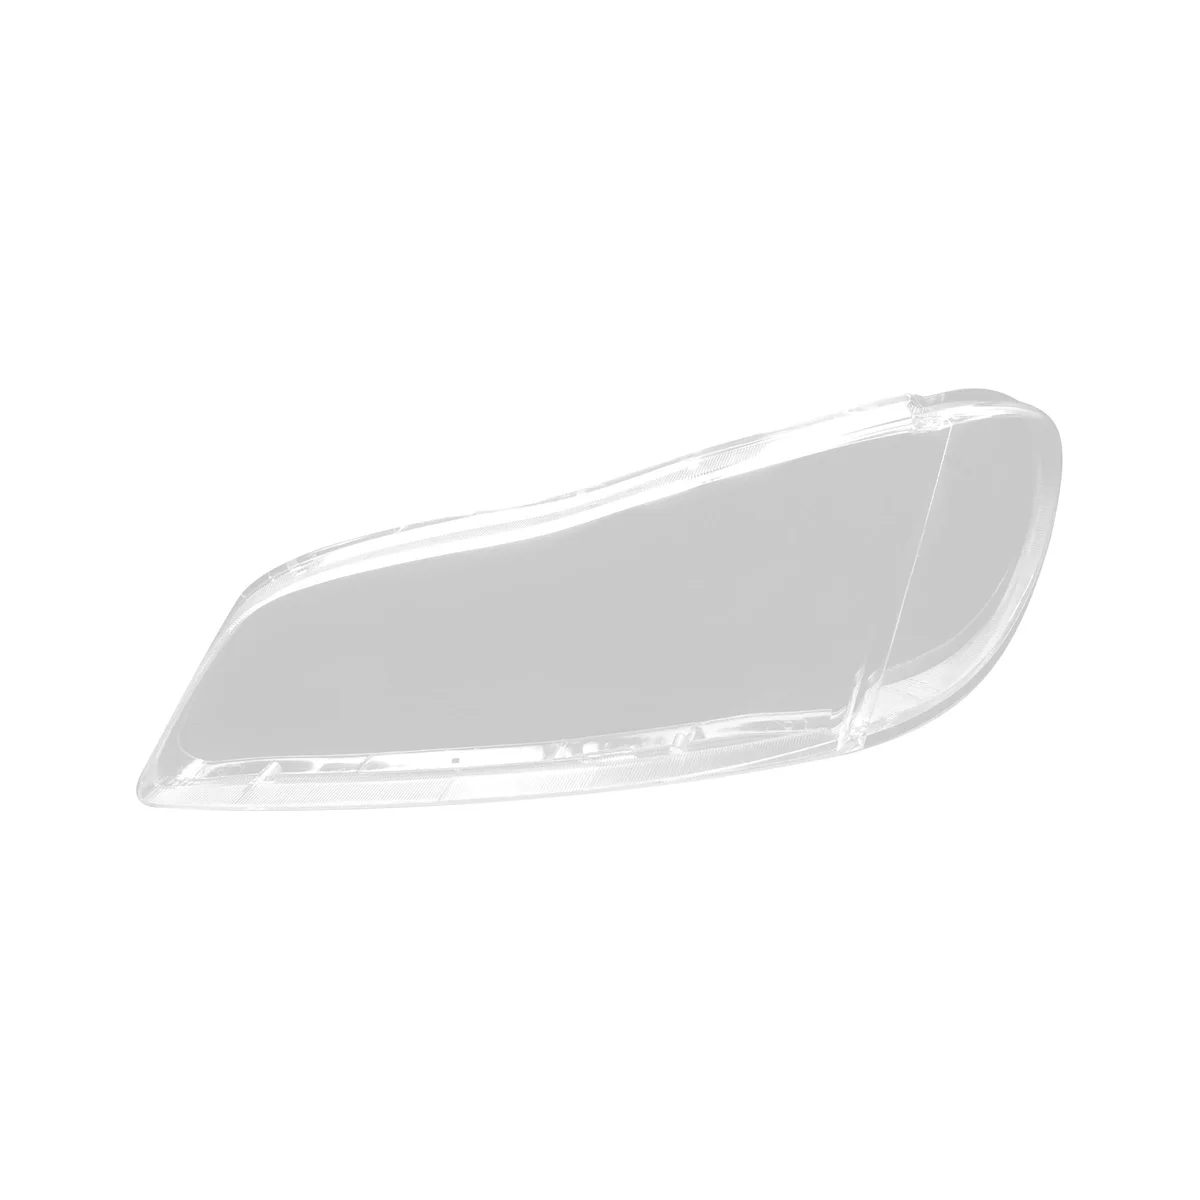 

Чехол для автомобильной левой фары, прозрачная крышка для объектива, чехол для передней фары Cefiro A33 2000-2004